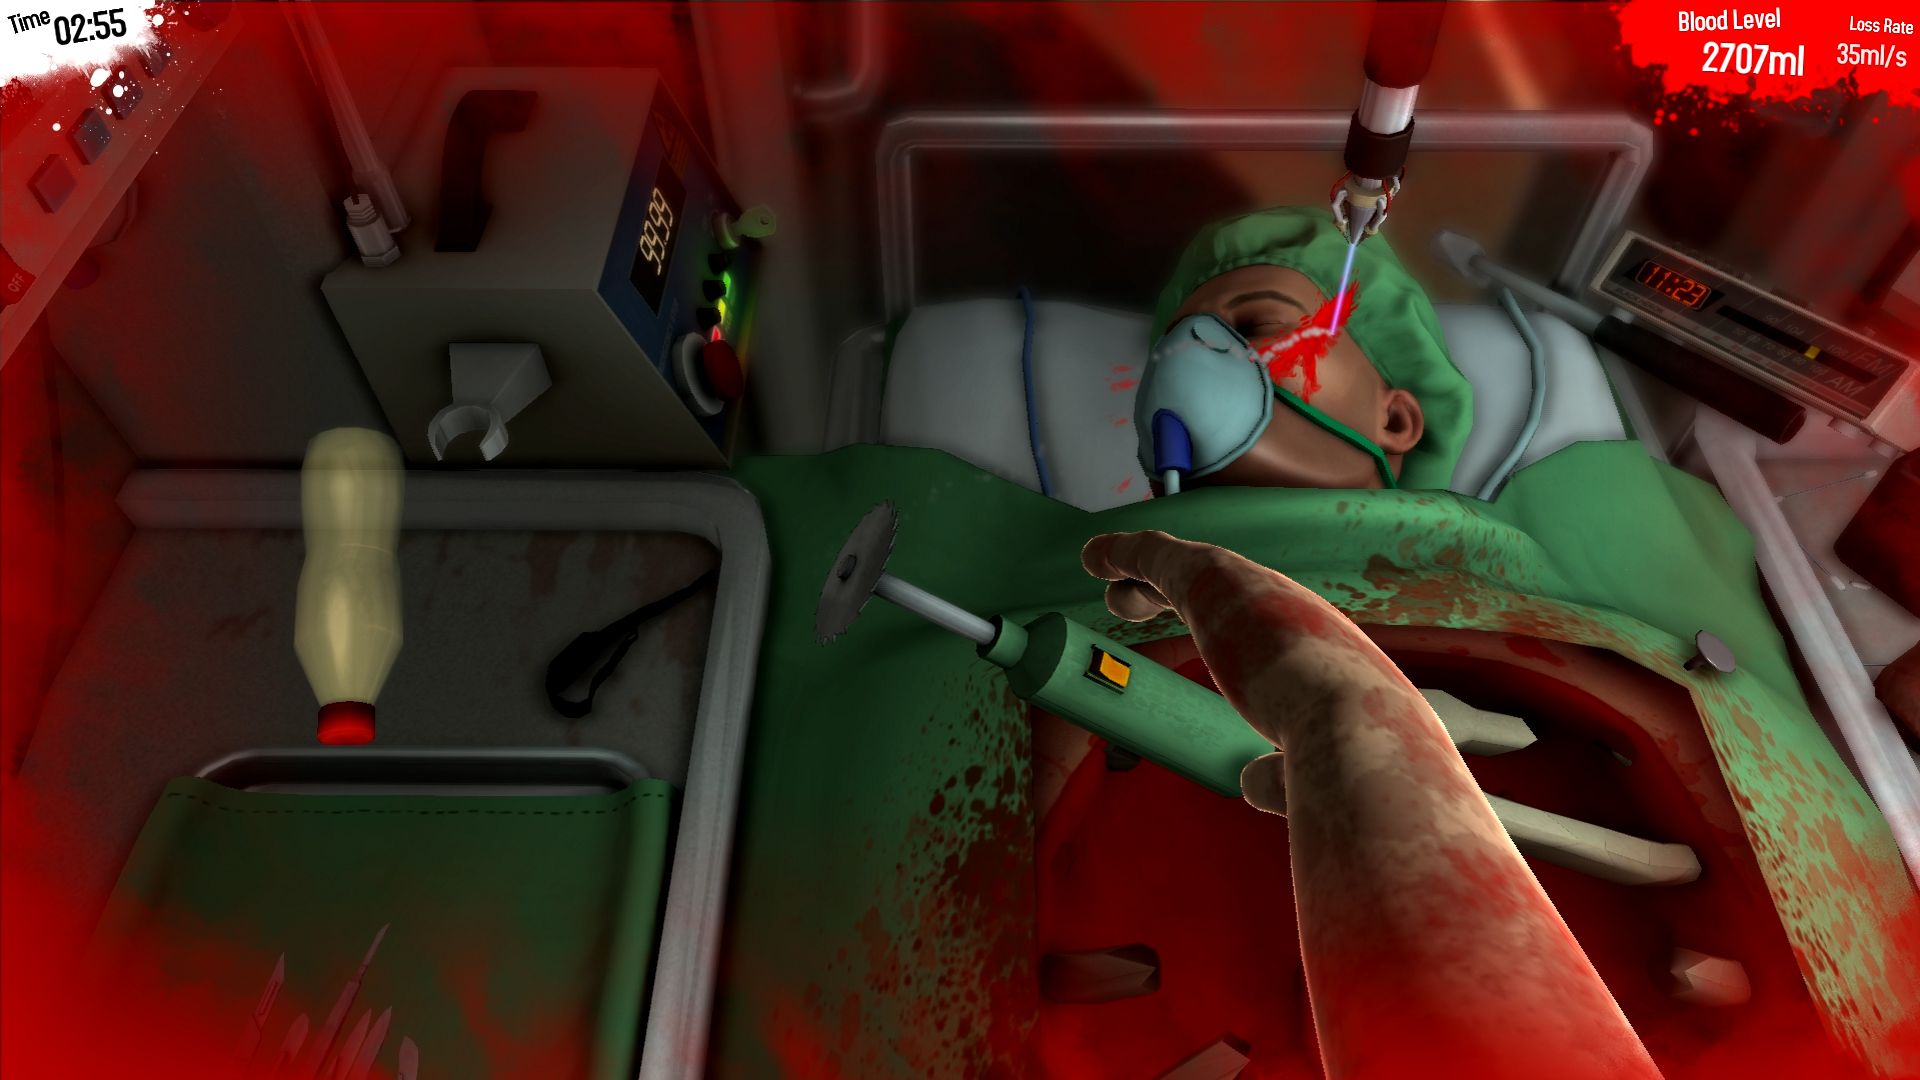 Edição de aniversário do simulador de cirurgião + pacote de pão [código de jogo online]